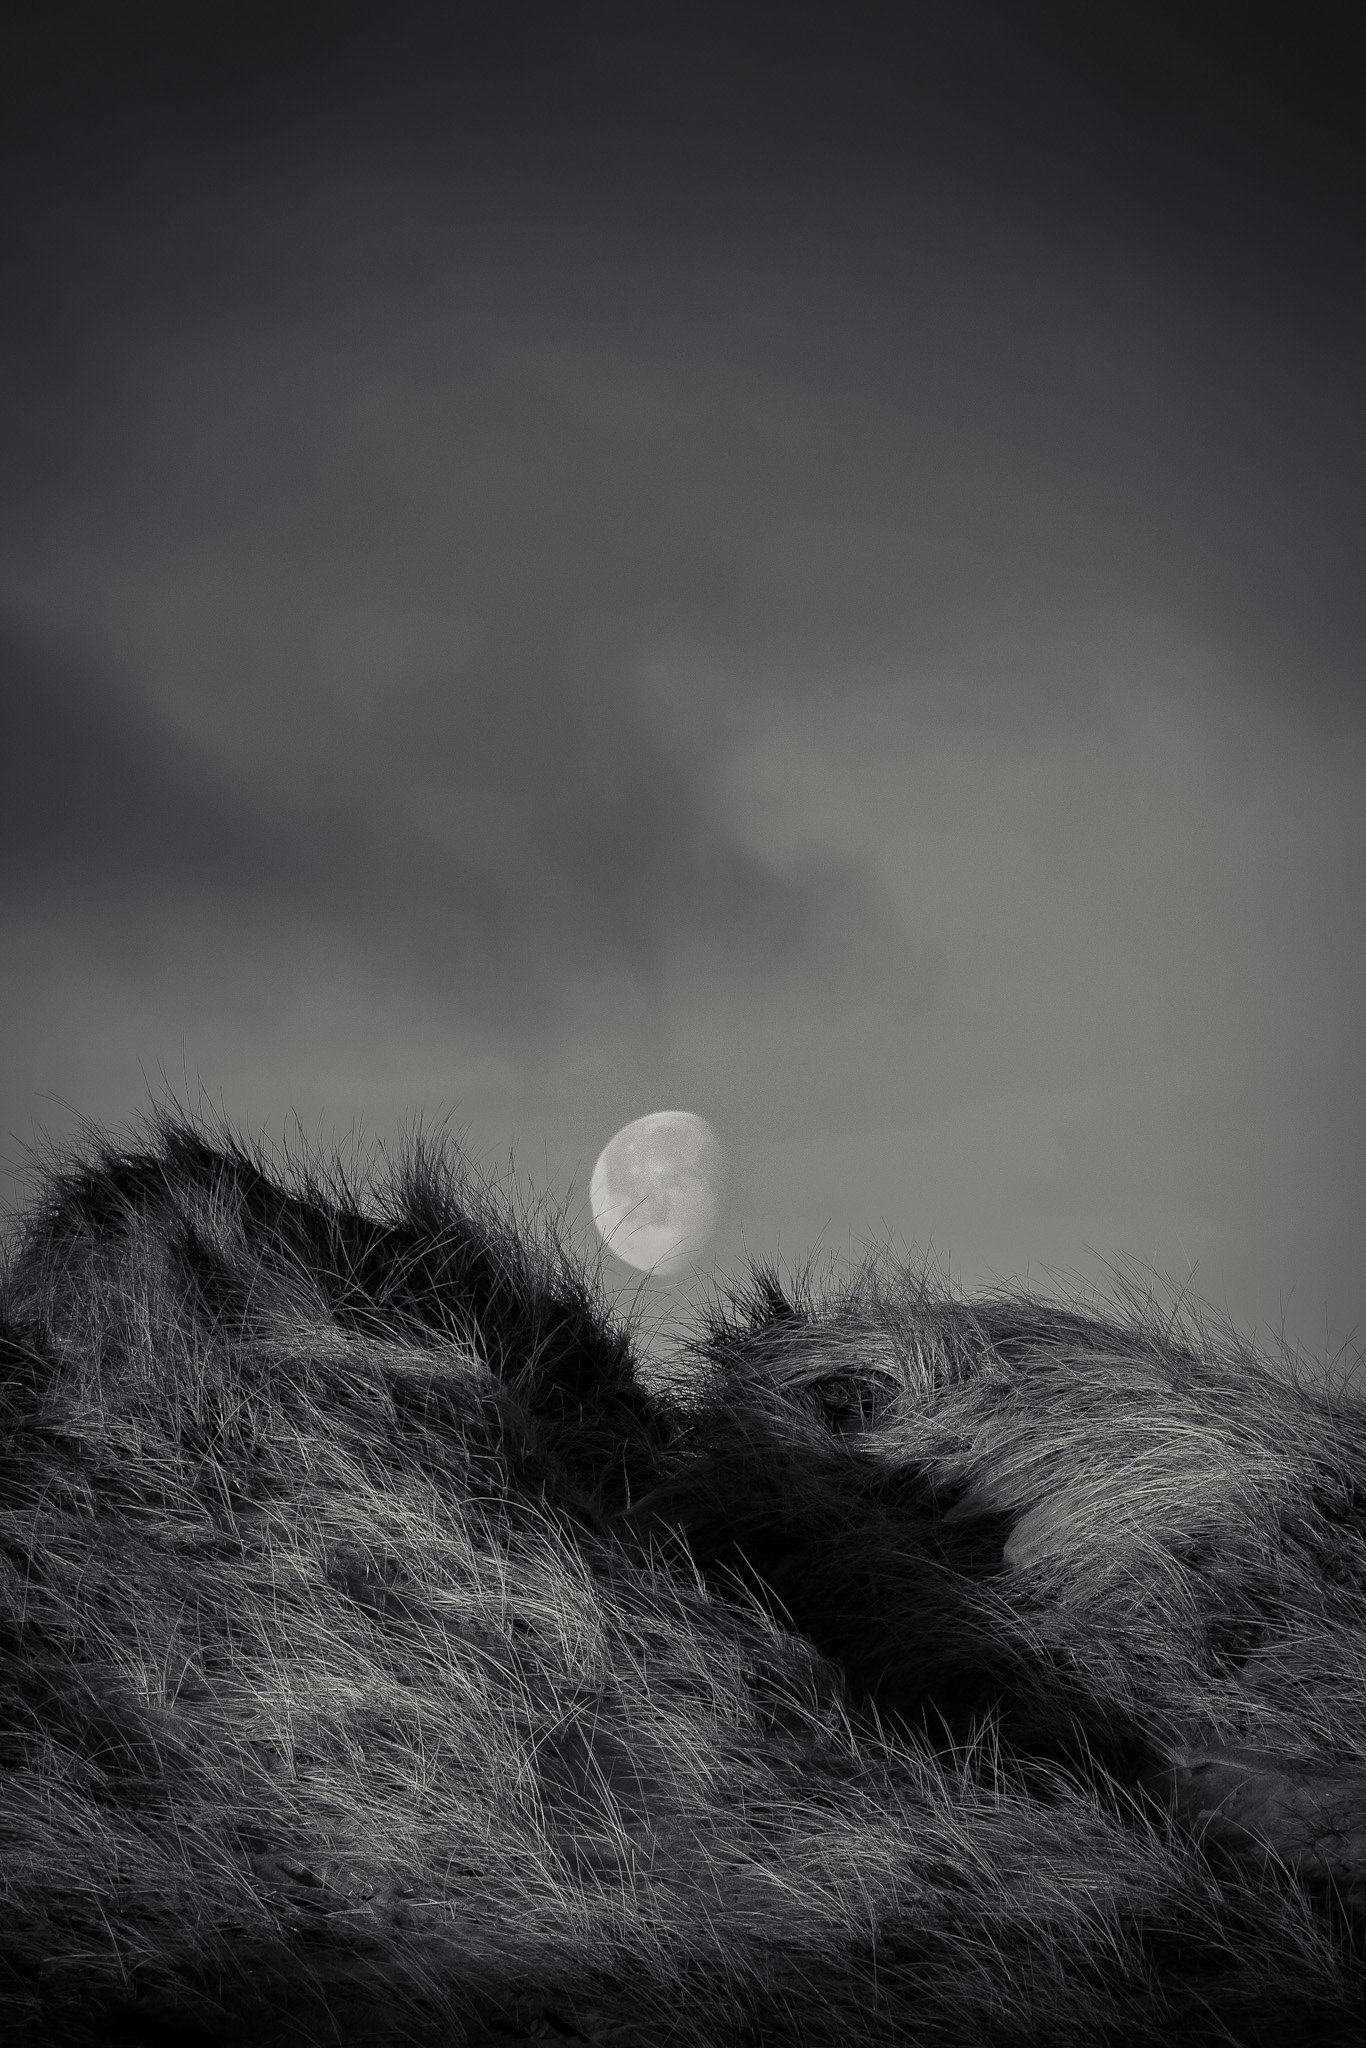 Day Moon, Warkworth